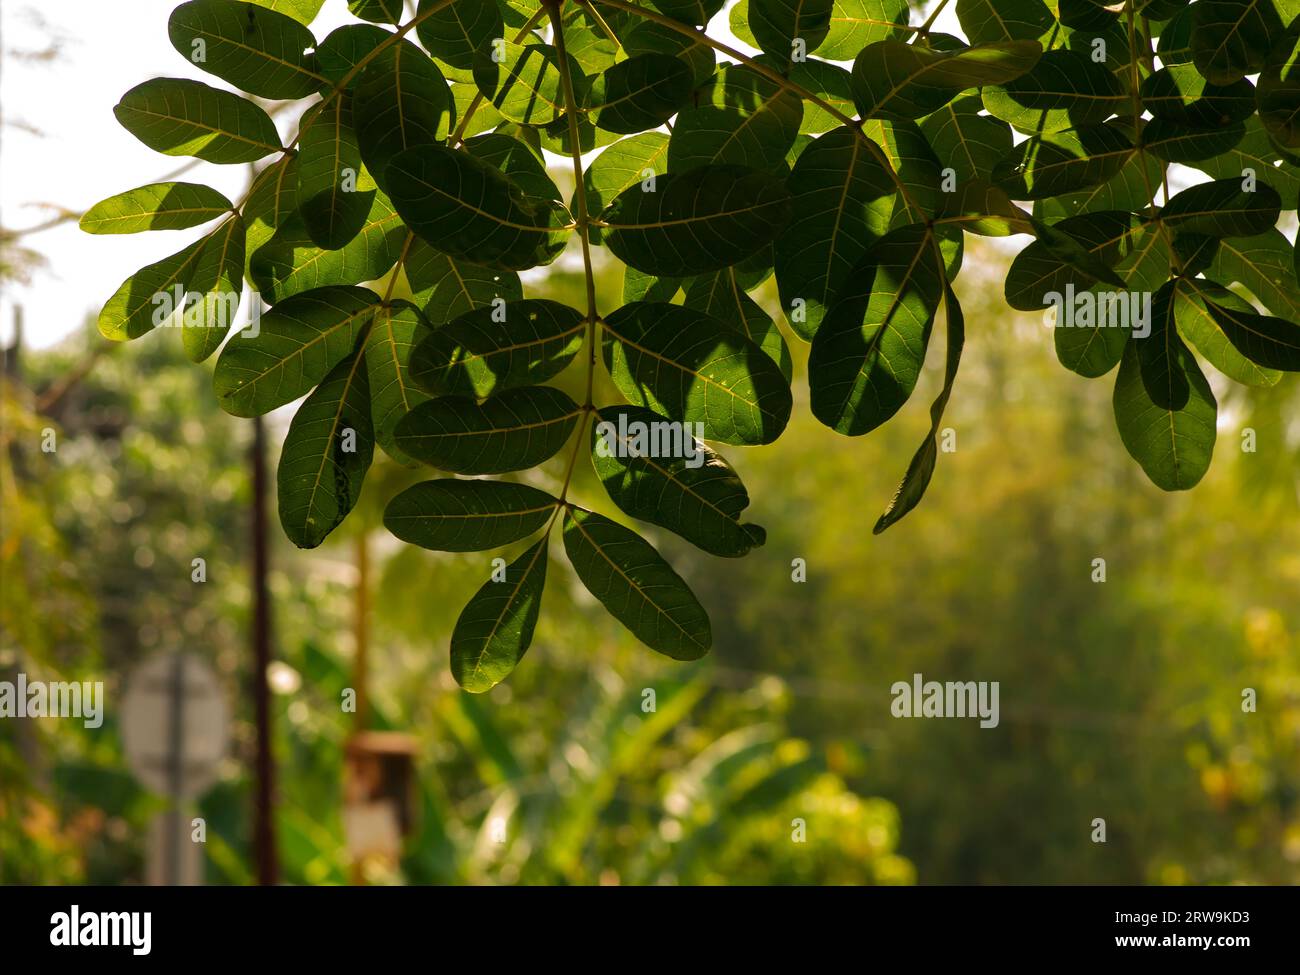 Beringin Iprik, Preh, Ficus retusa, Ficus truncata foglie verdi, messa a fuoco superficiale Foto Stock